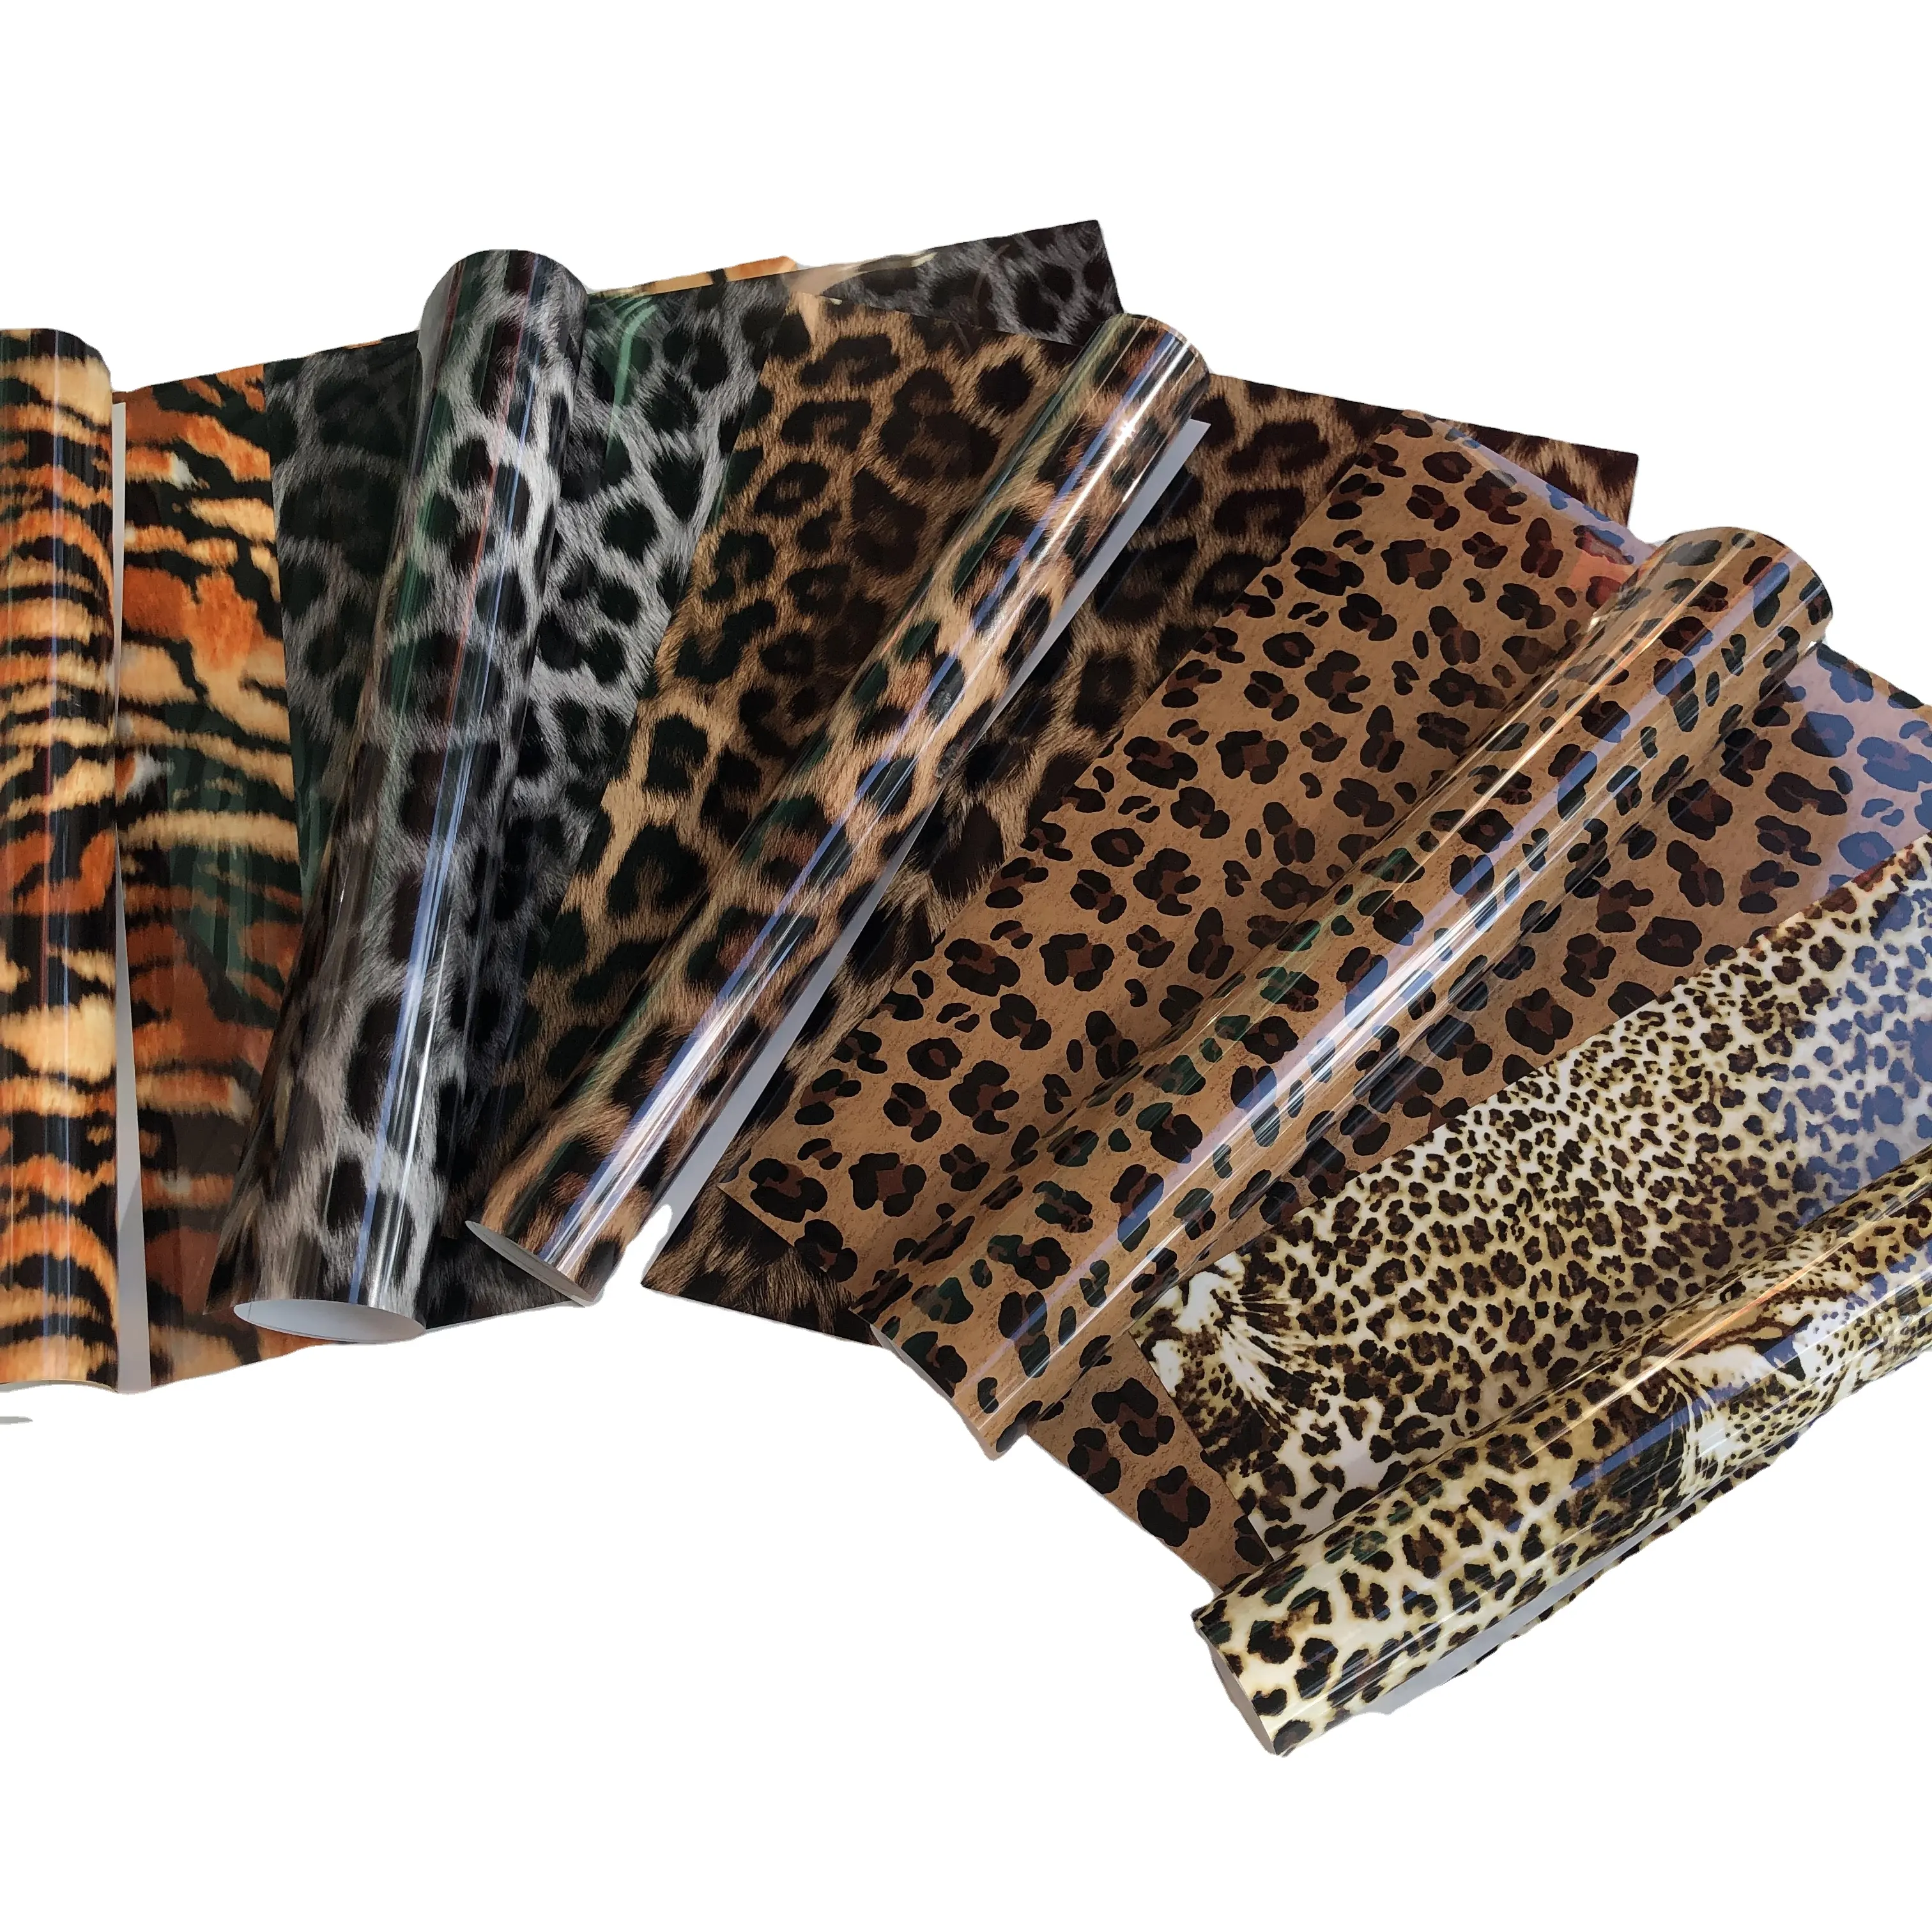 Vinyle imprimé léopard Htv, 12X10 pouces, 7 feuilles, transfert de chaleur, animaux sauvages, en vinyle, Cheetah, Htv, pour vêtements de bricolage